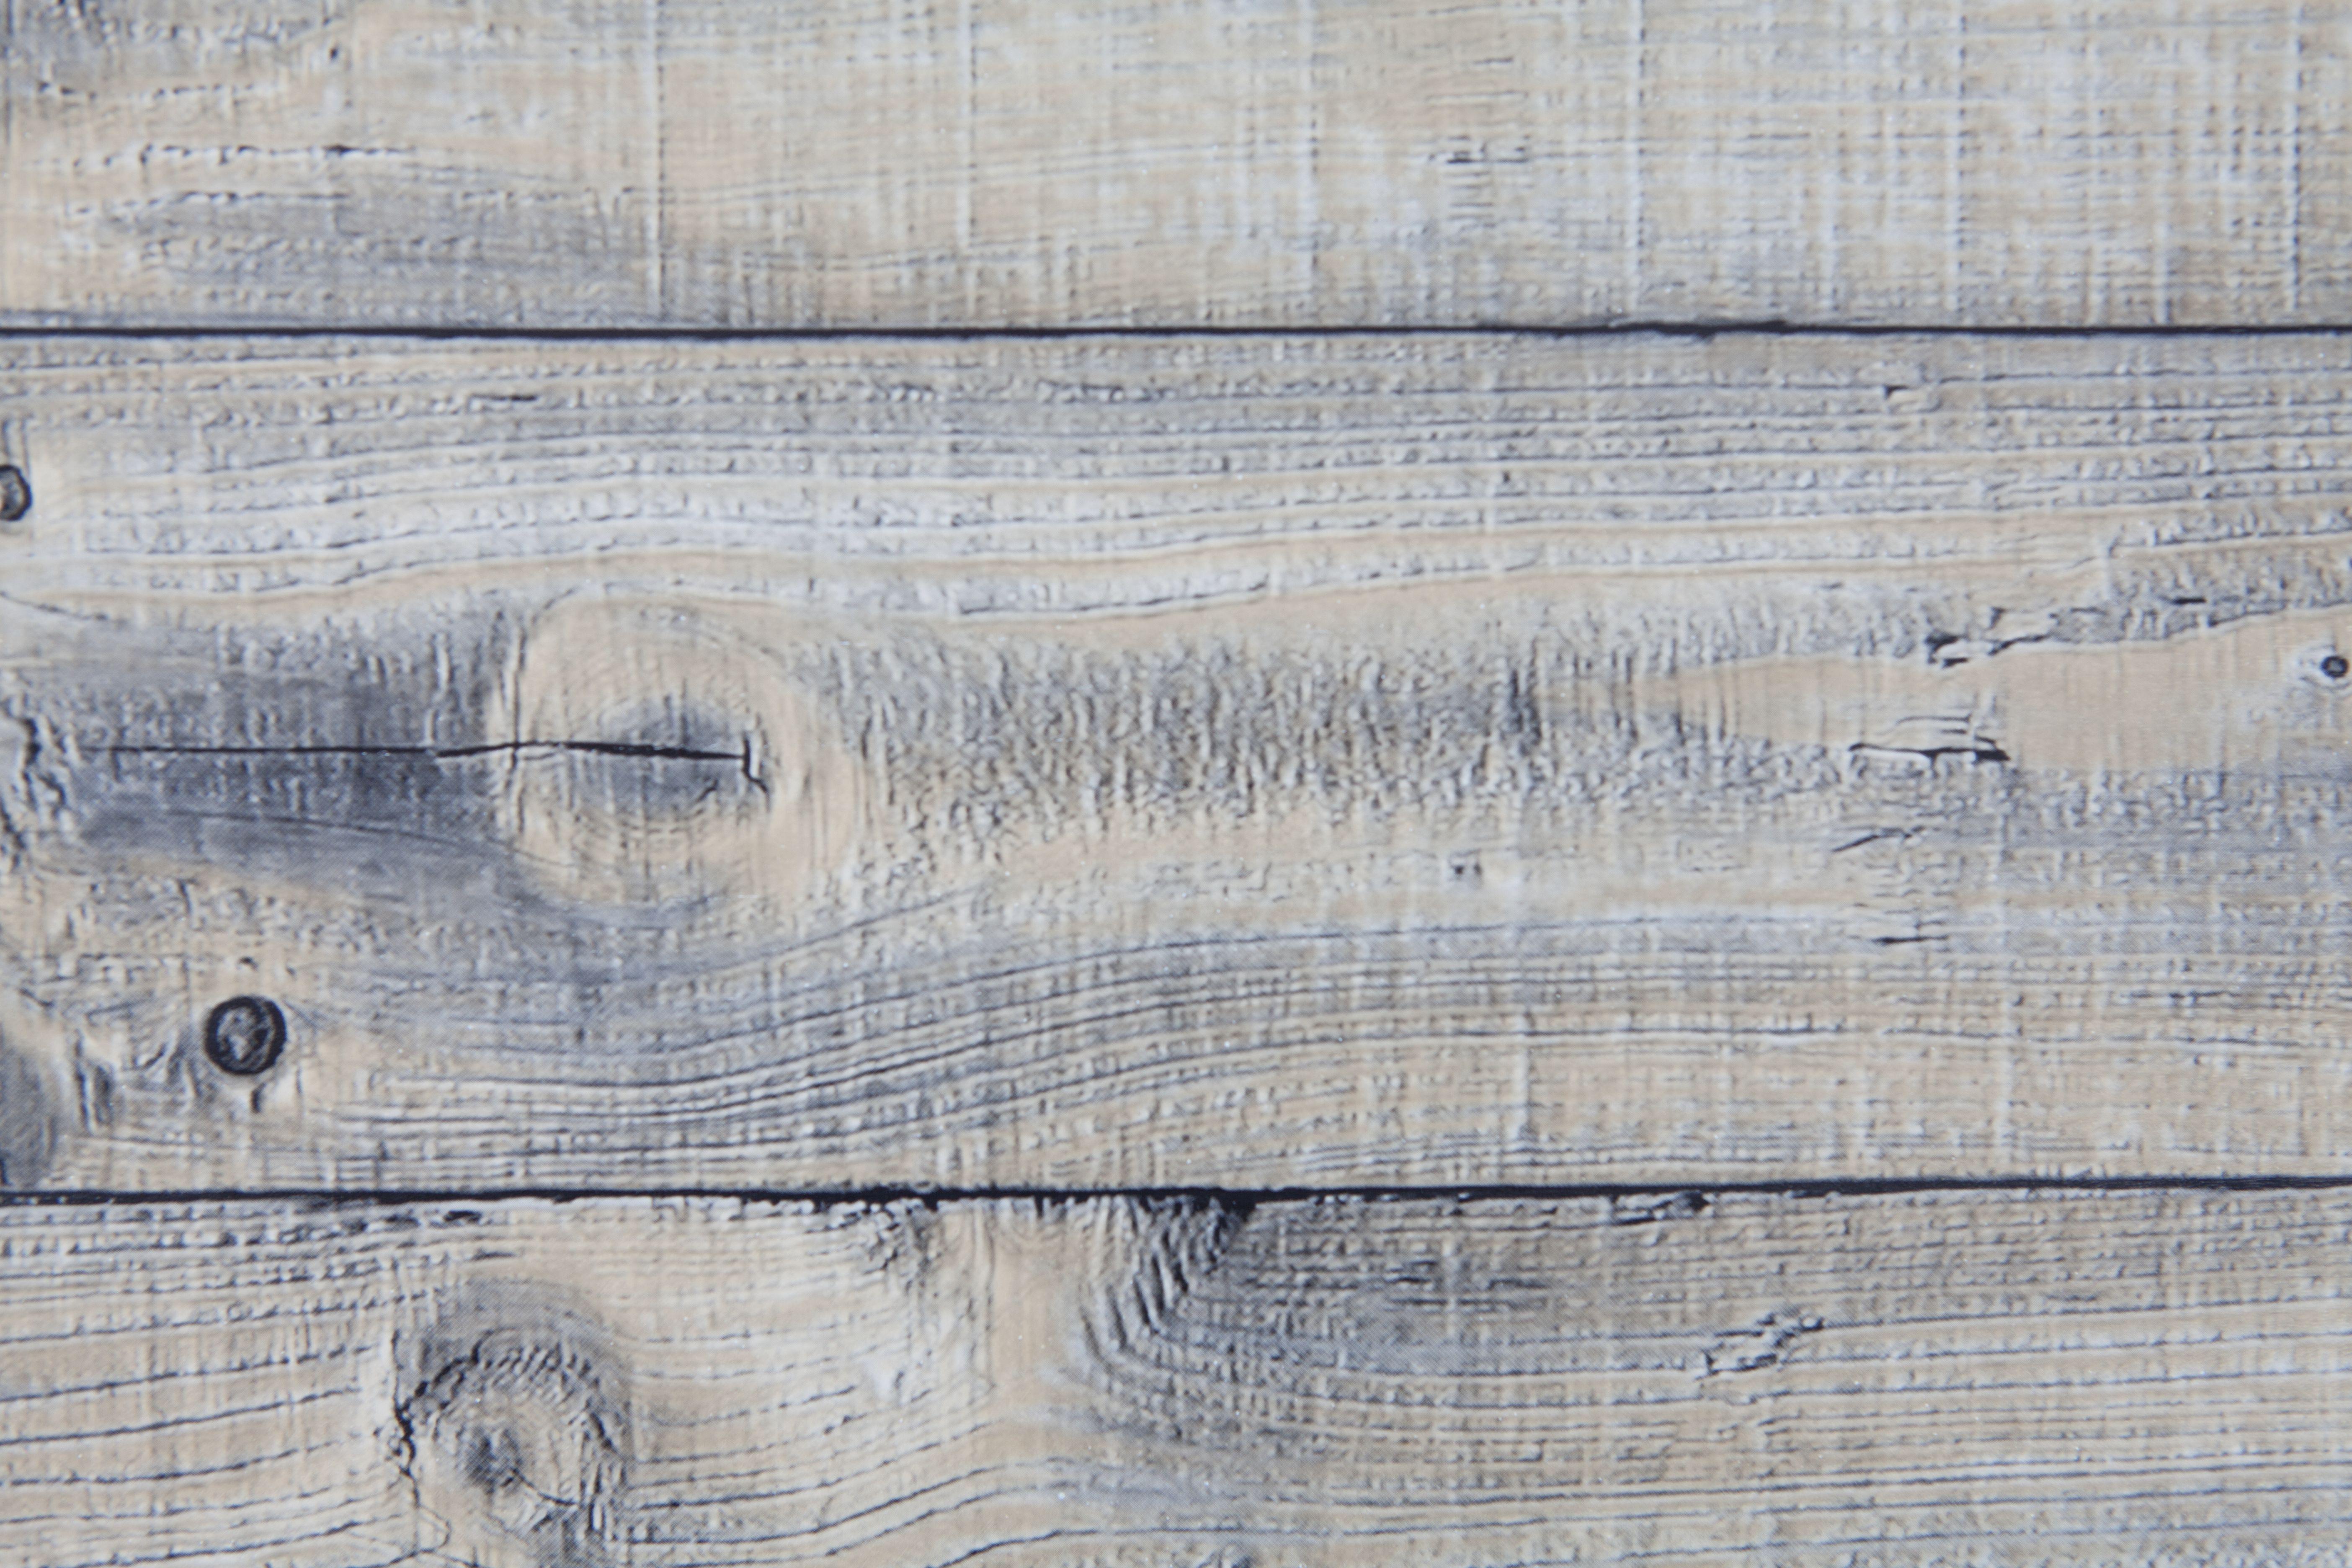 d-c-fix® Möbelfolie Holz Typ Rustik (90cm)